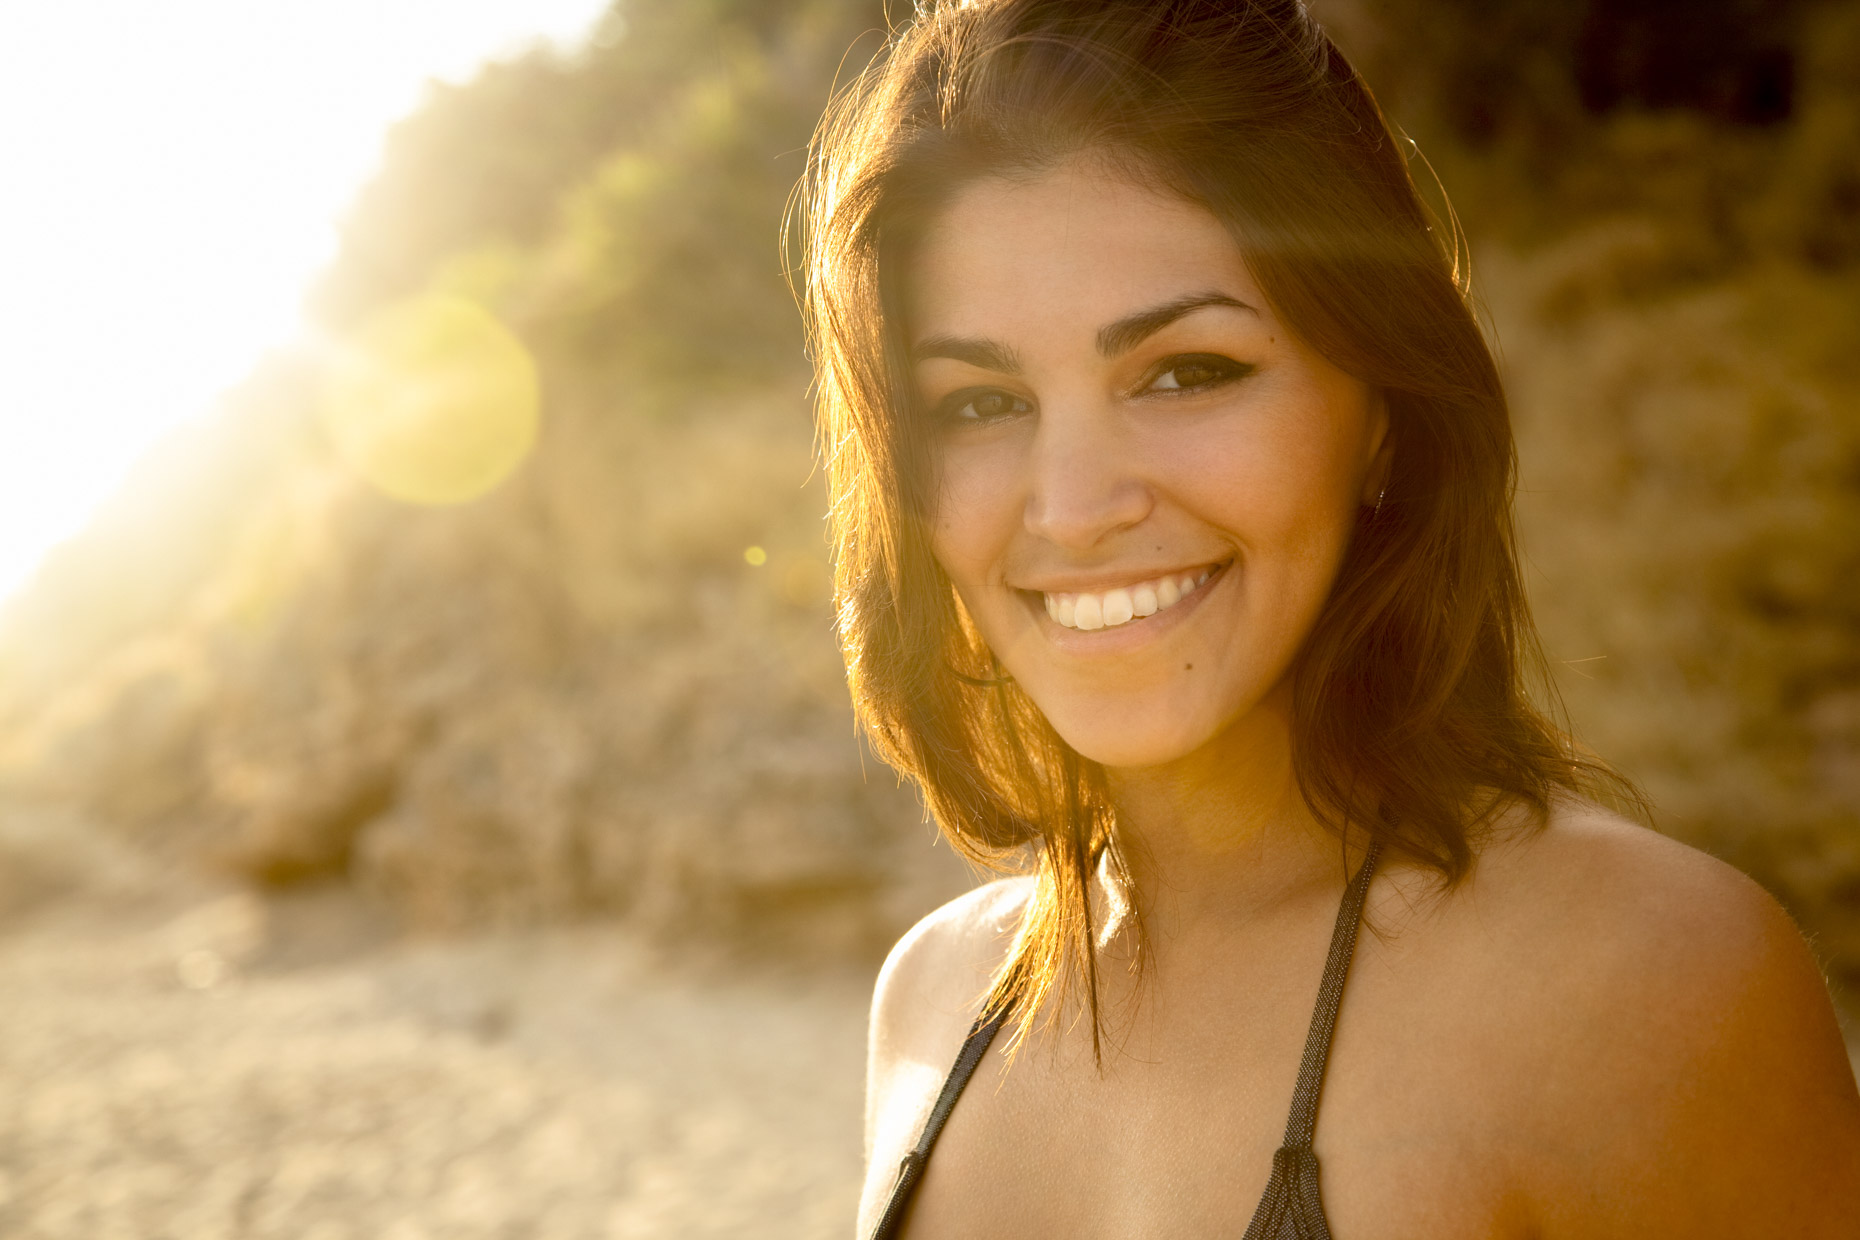 Smiling woman in sunlight on beach in bikini